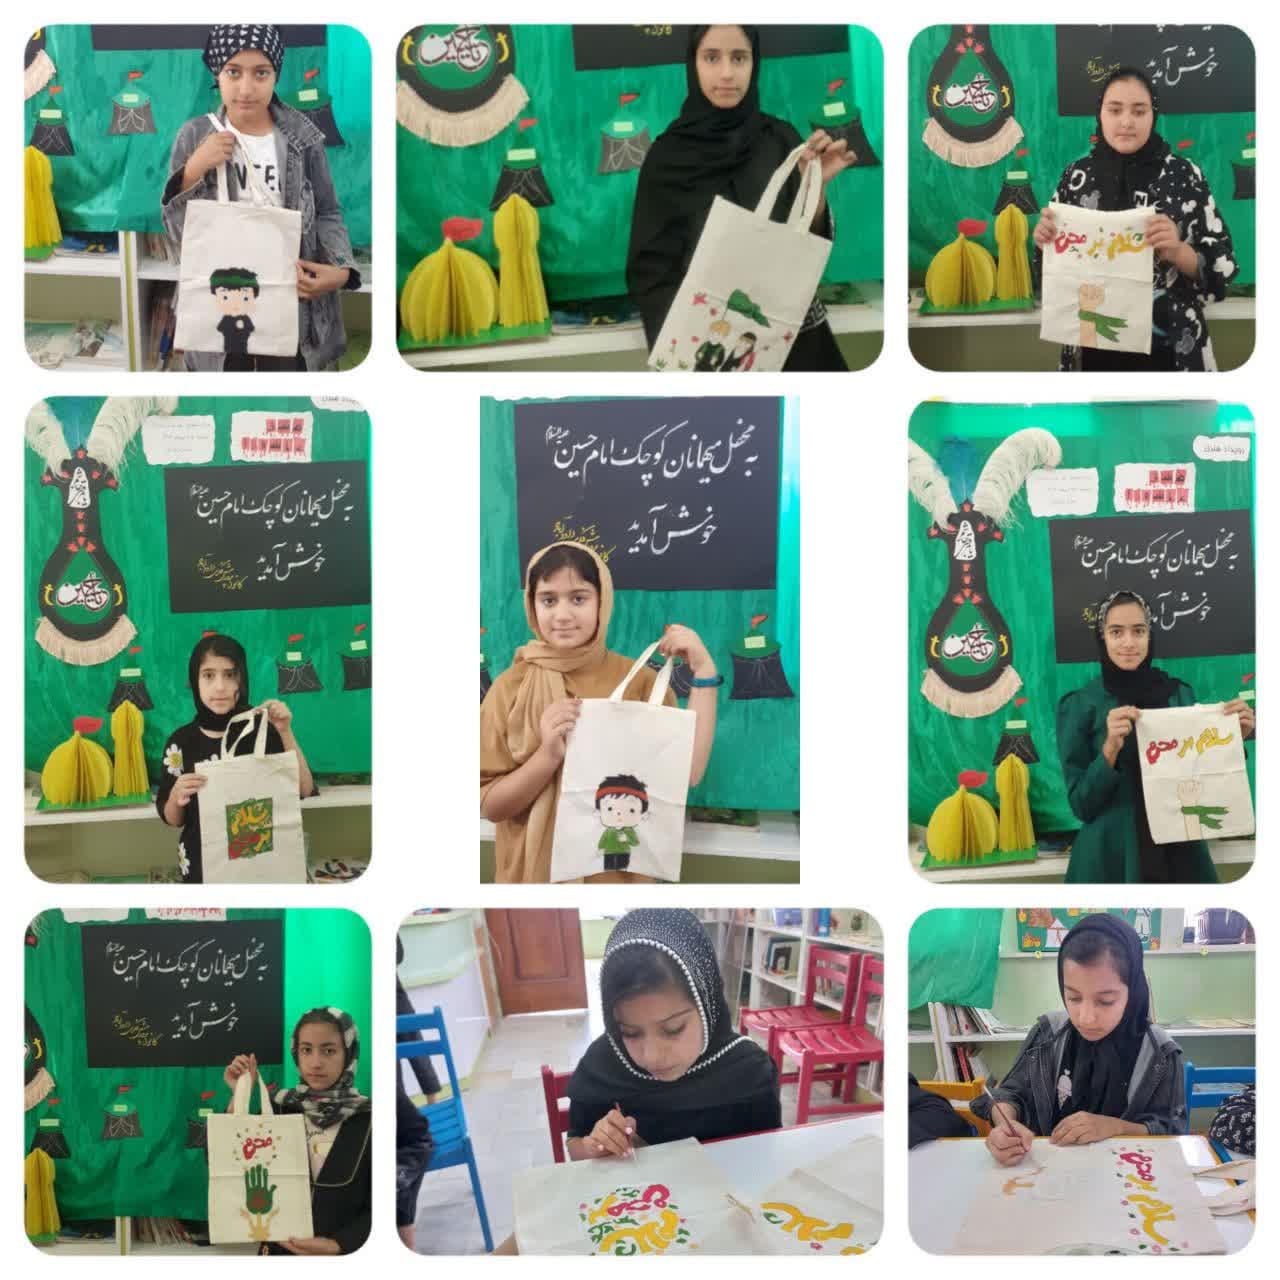 رویداد هنری "مشق عاشورا" در مرکز فرهنگی هنری شهر داودآباد